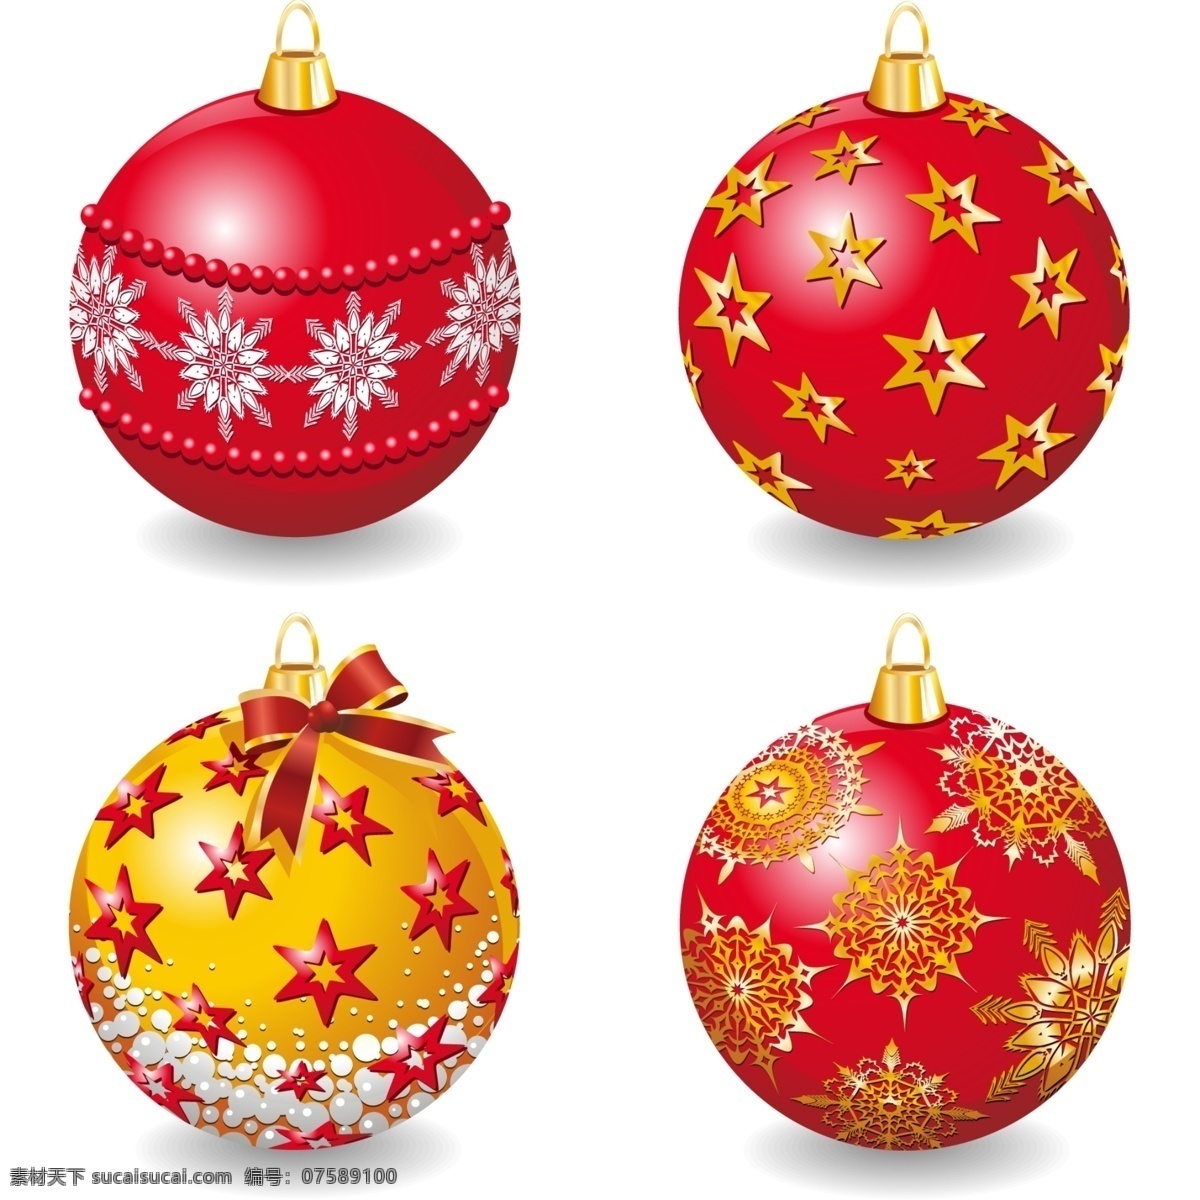 高清 圣诞 彩球 矢量图 圣诞节 节日 花纹 装饰 星星 红色 节日素材 其他节日